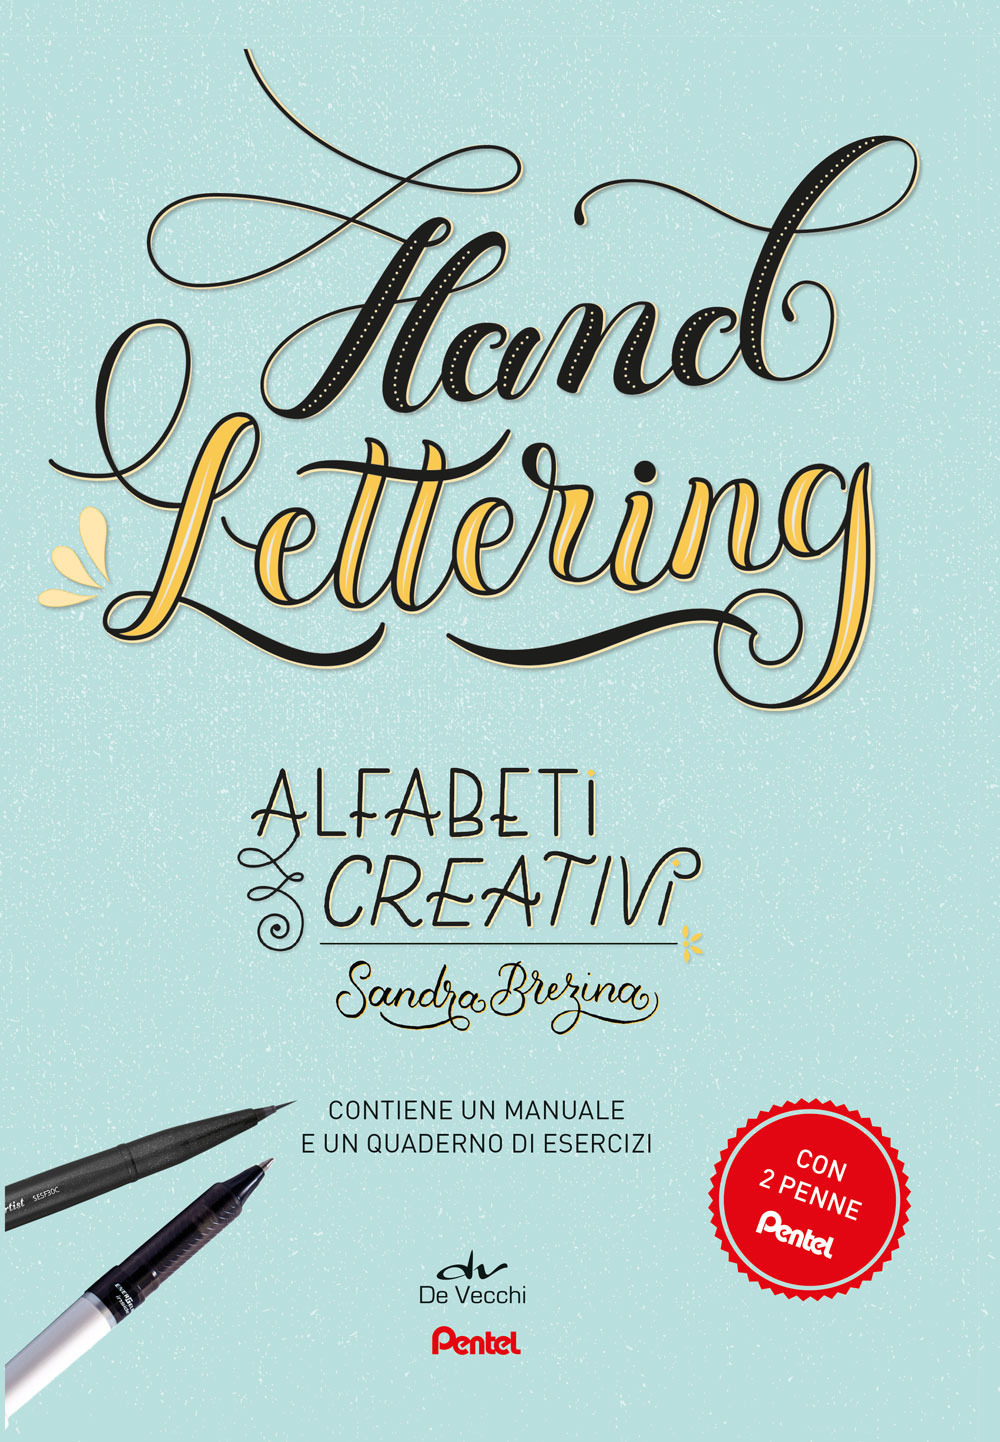 Hand lettering. Alfabeti creativi. Con gadget